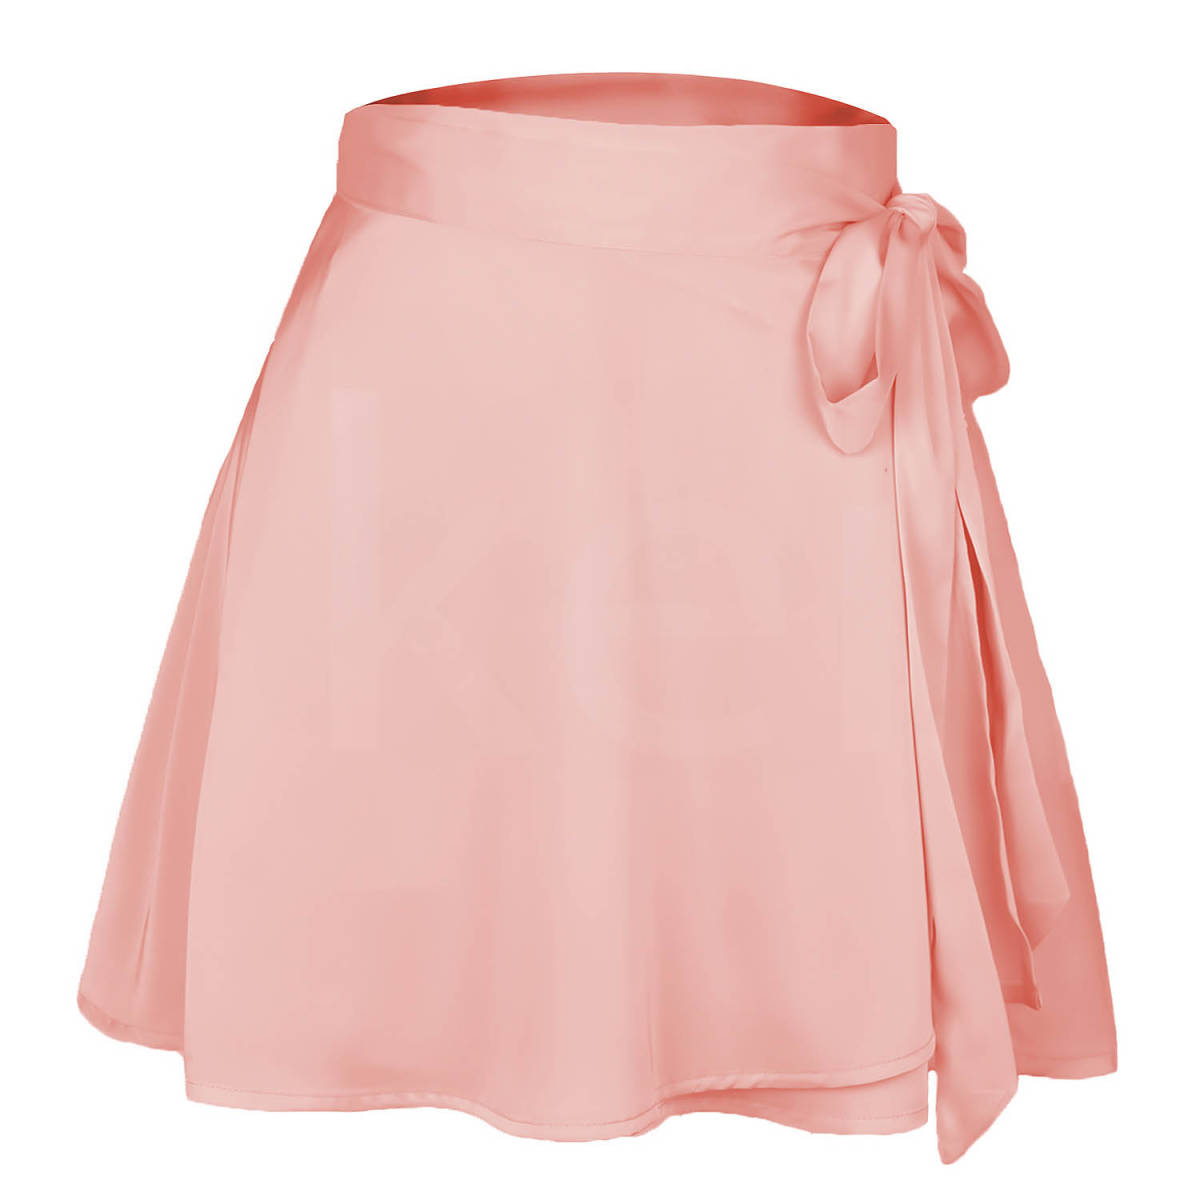 L размер .... атлас .... юбка розовый CP бесплатная доставка доставка внутри страны # [6035-2-3E